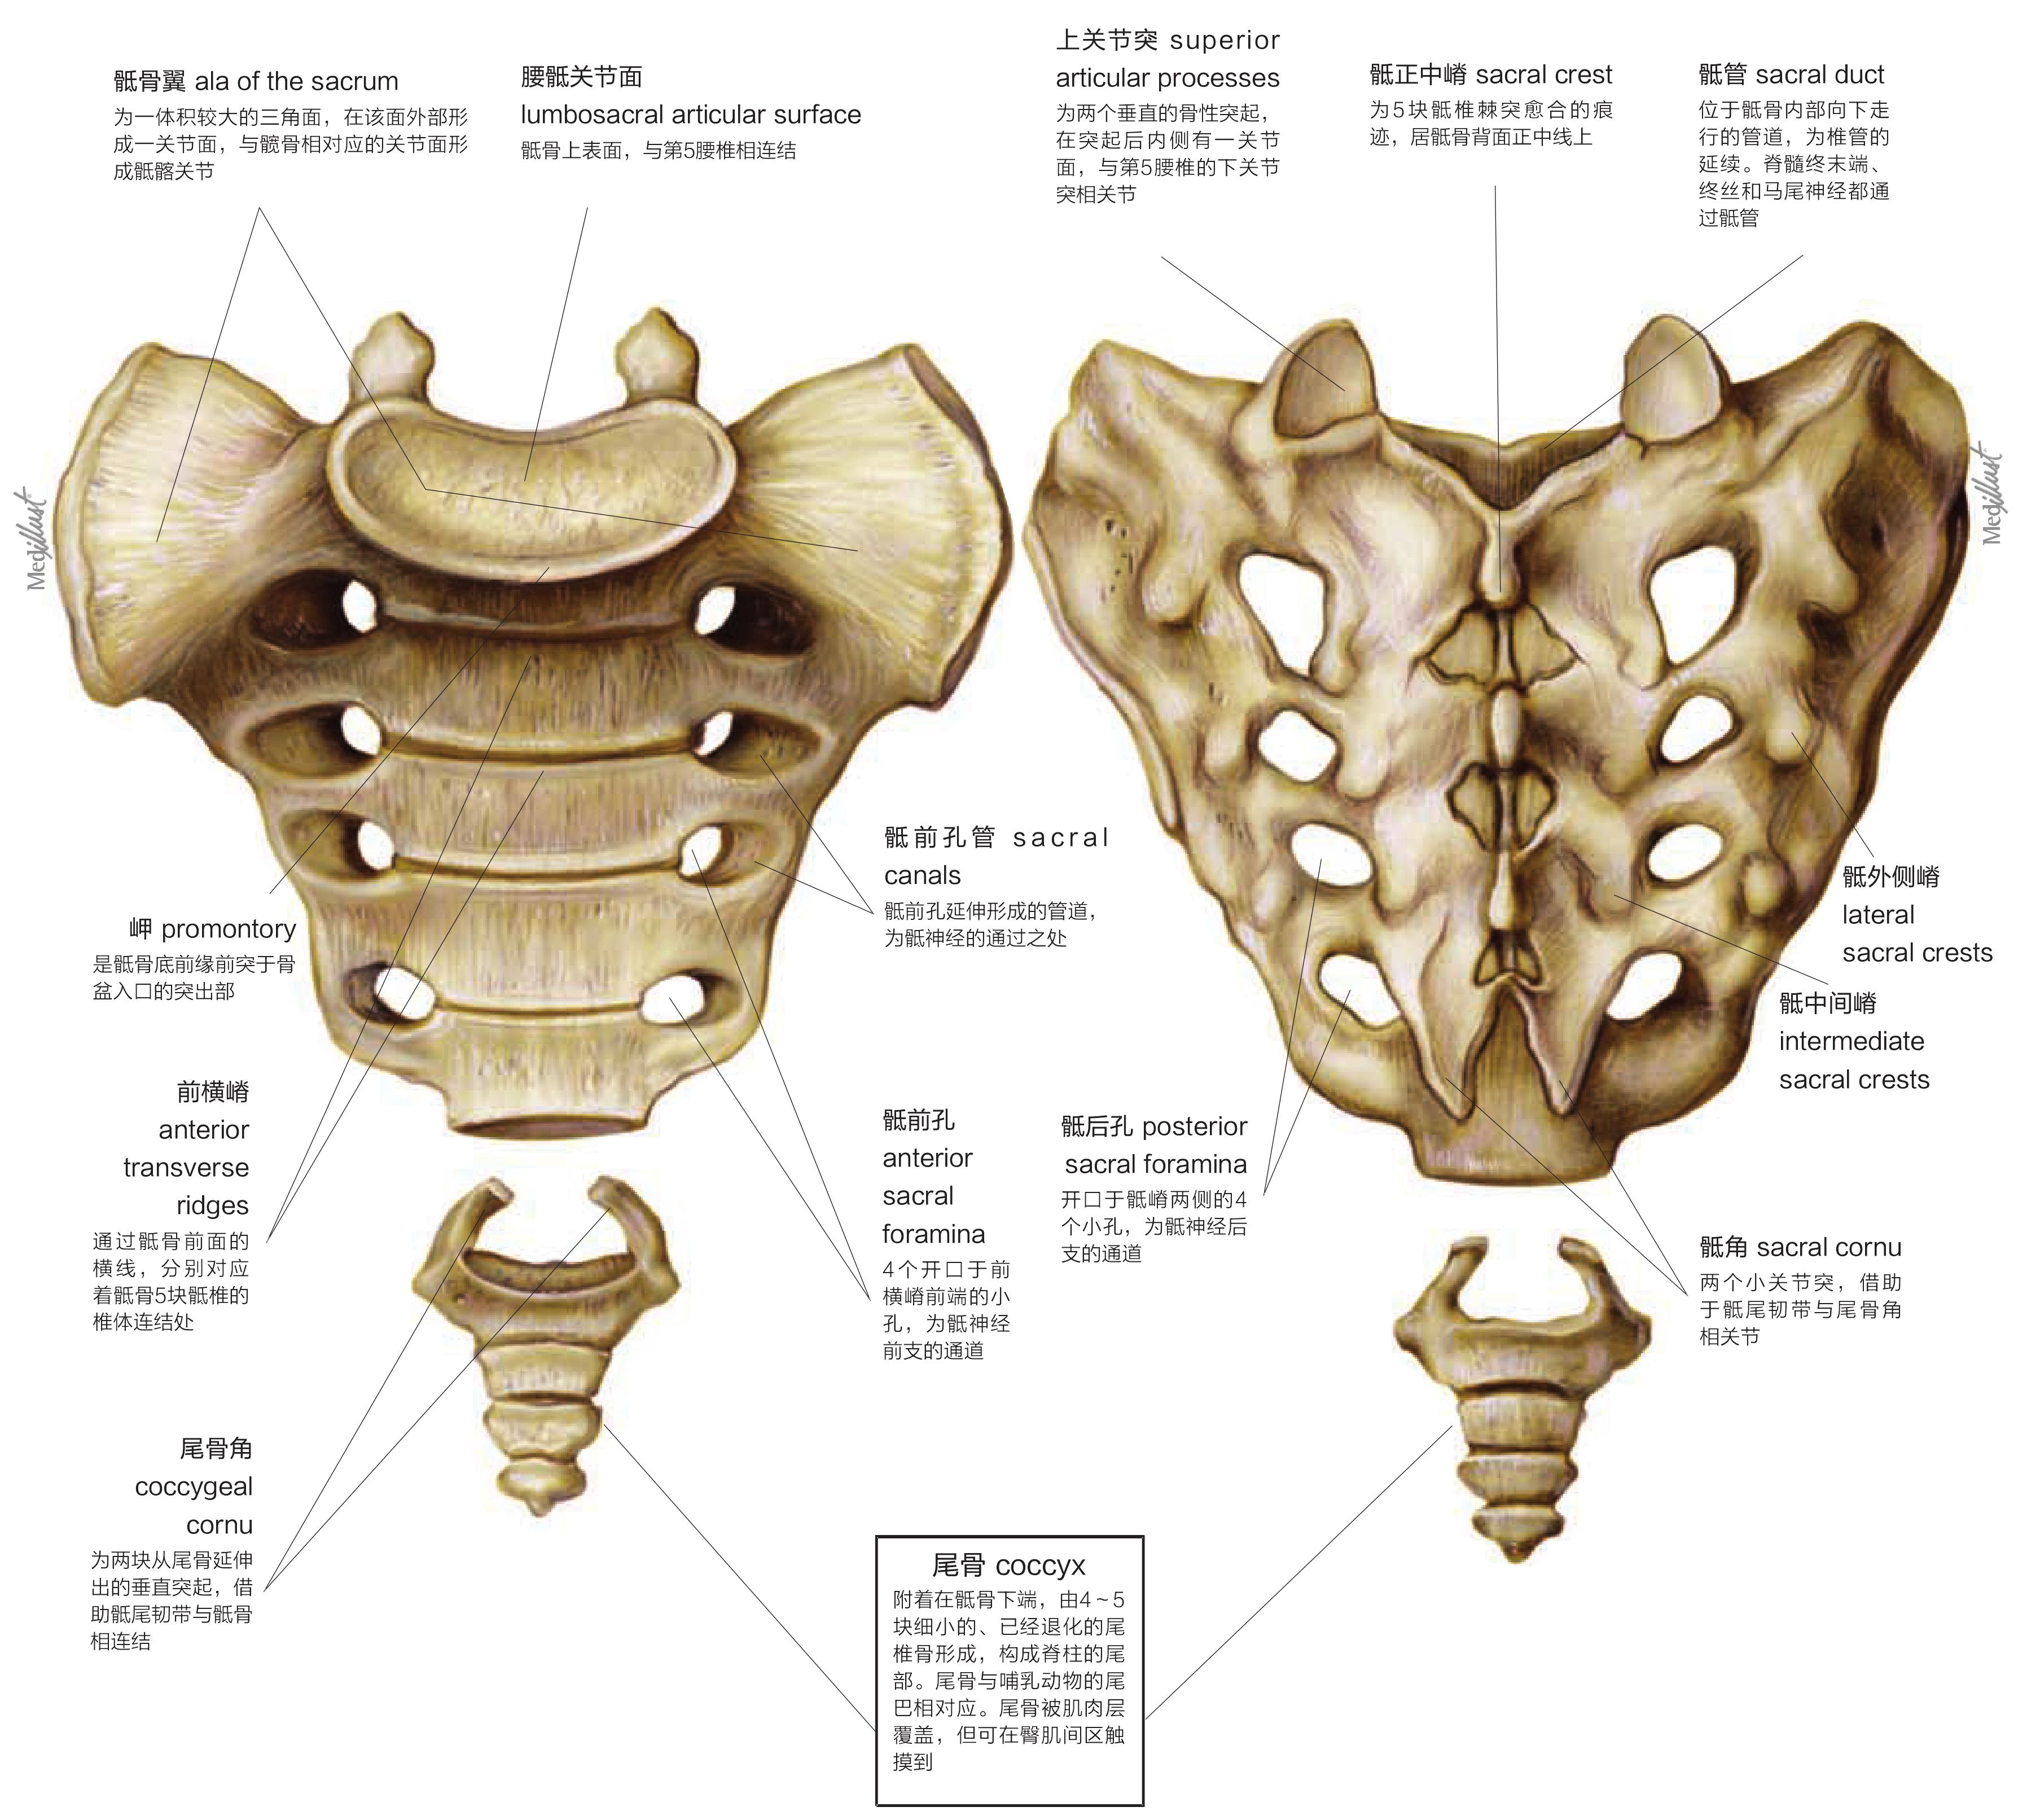 图1-1-14 骶骨和尾骨-基础医学-医学